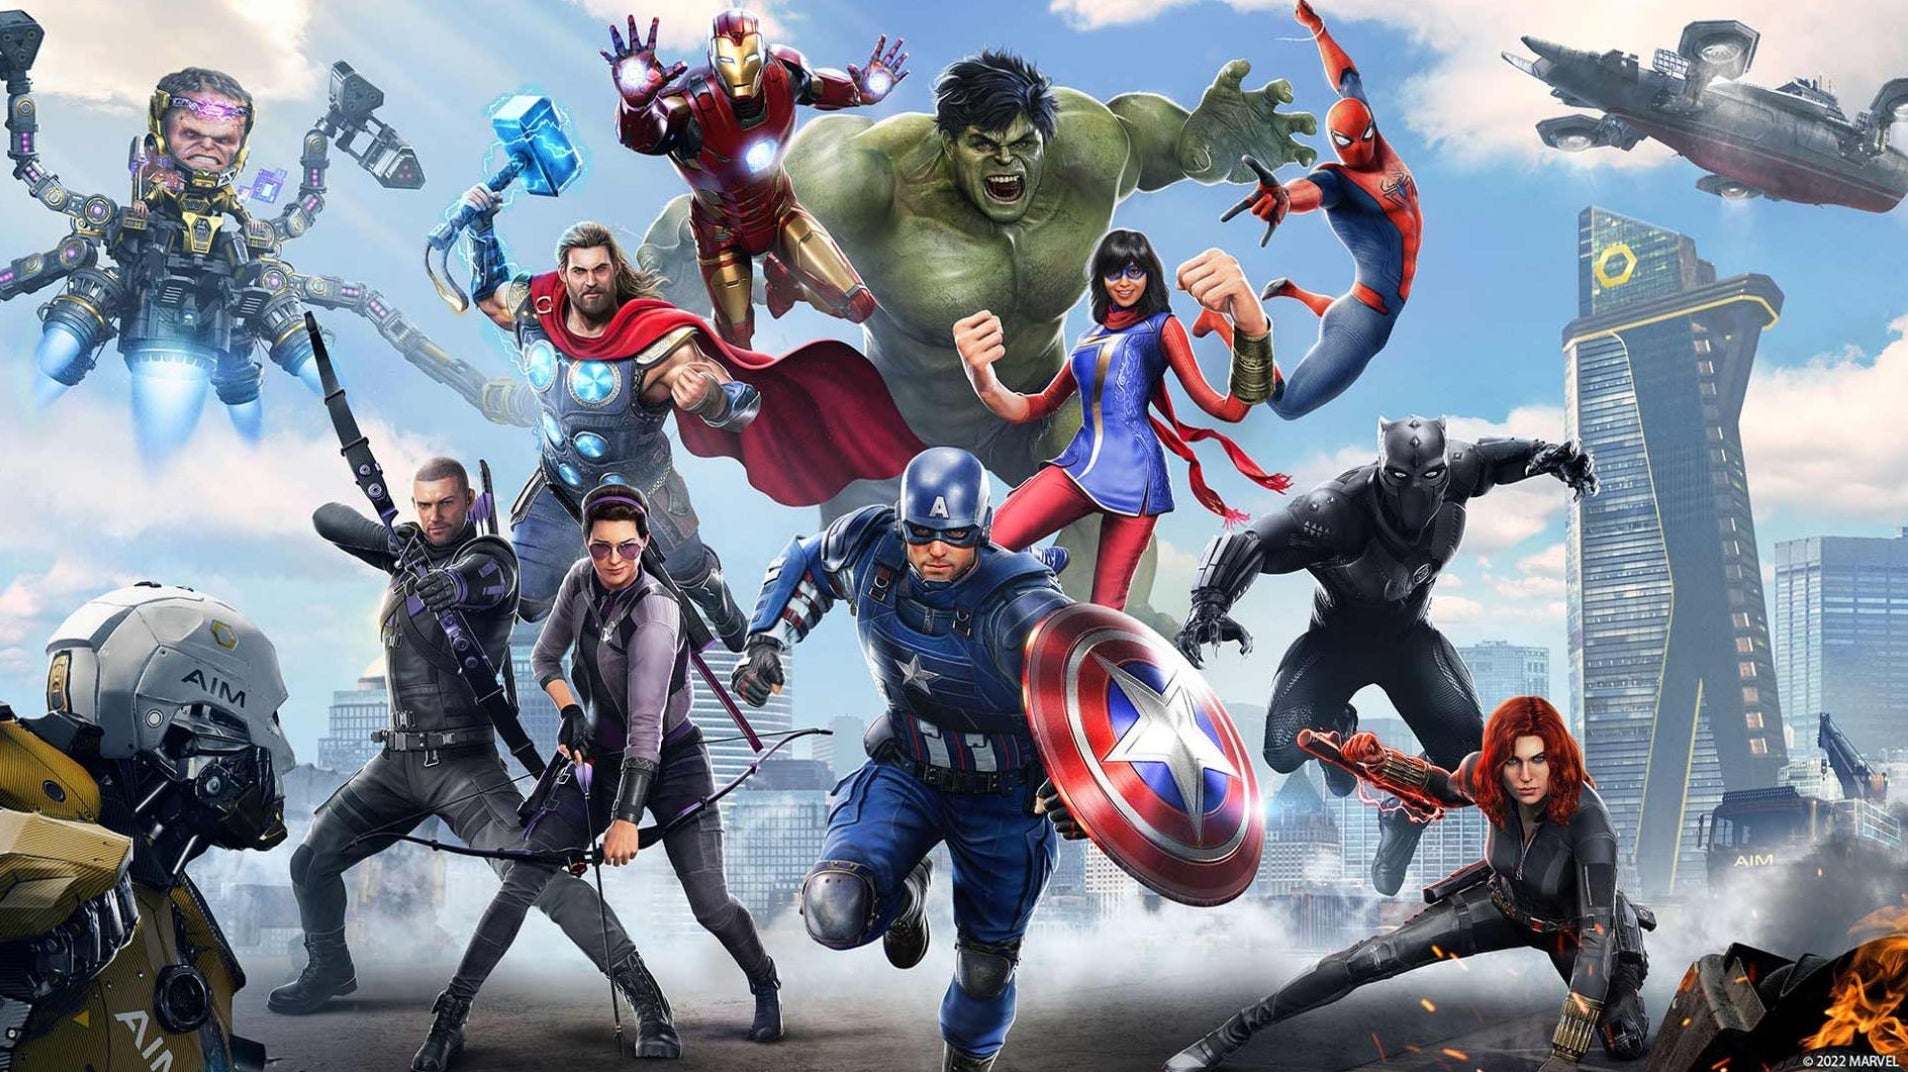 Immagine di Marvel's Avengers, gli sviluppatori non sono ancora pronti a mostrare la nuova roadmap